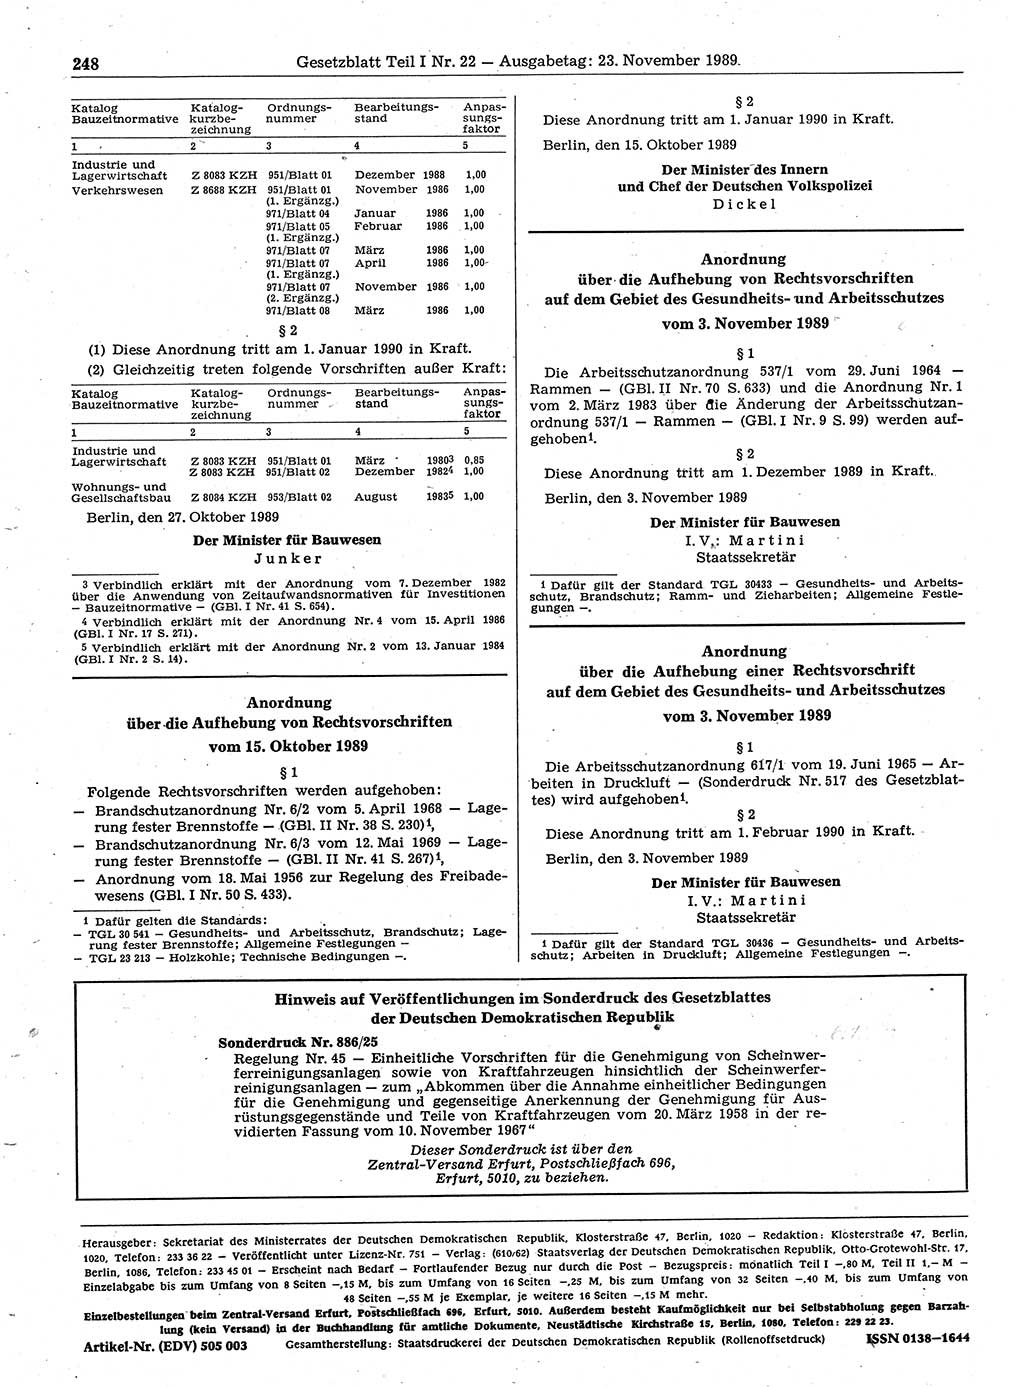 Gesetzblatt (GBl.) der Deutschen Demokratischen Republik (DDR) Teil Ⅰ 1989, Seite 248 (GBl. DDR Ⅰ 1989, S. 248)